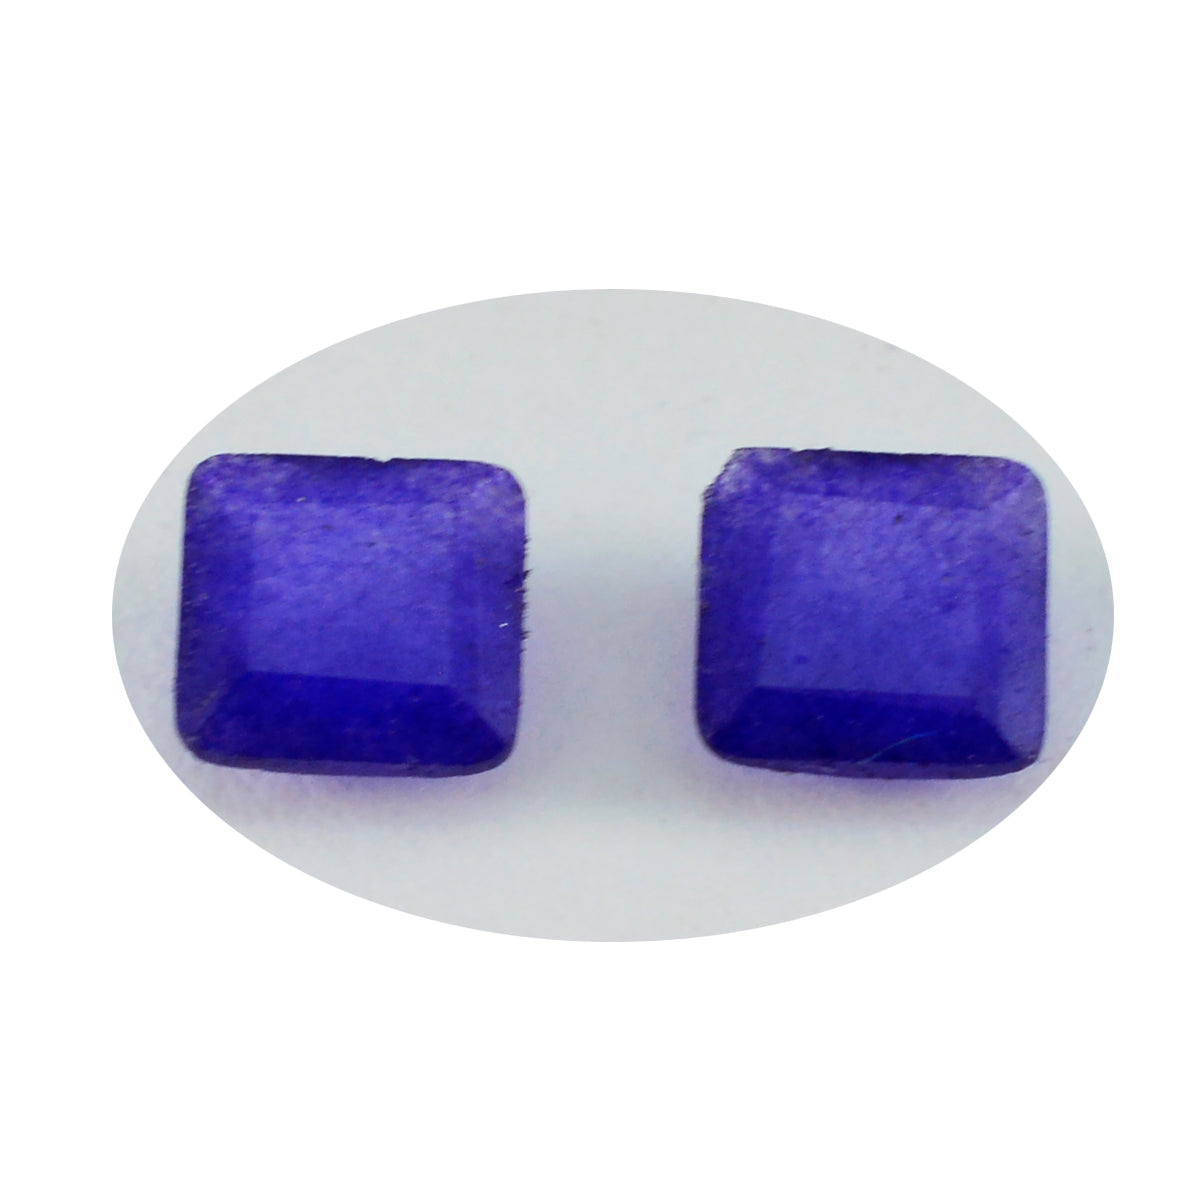 riyogems 1 шт. настоящая синяя яшма граненая 8x8 мм квадратной формы довольно качественный свободный драгоценный камень